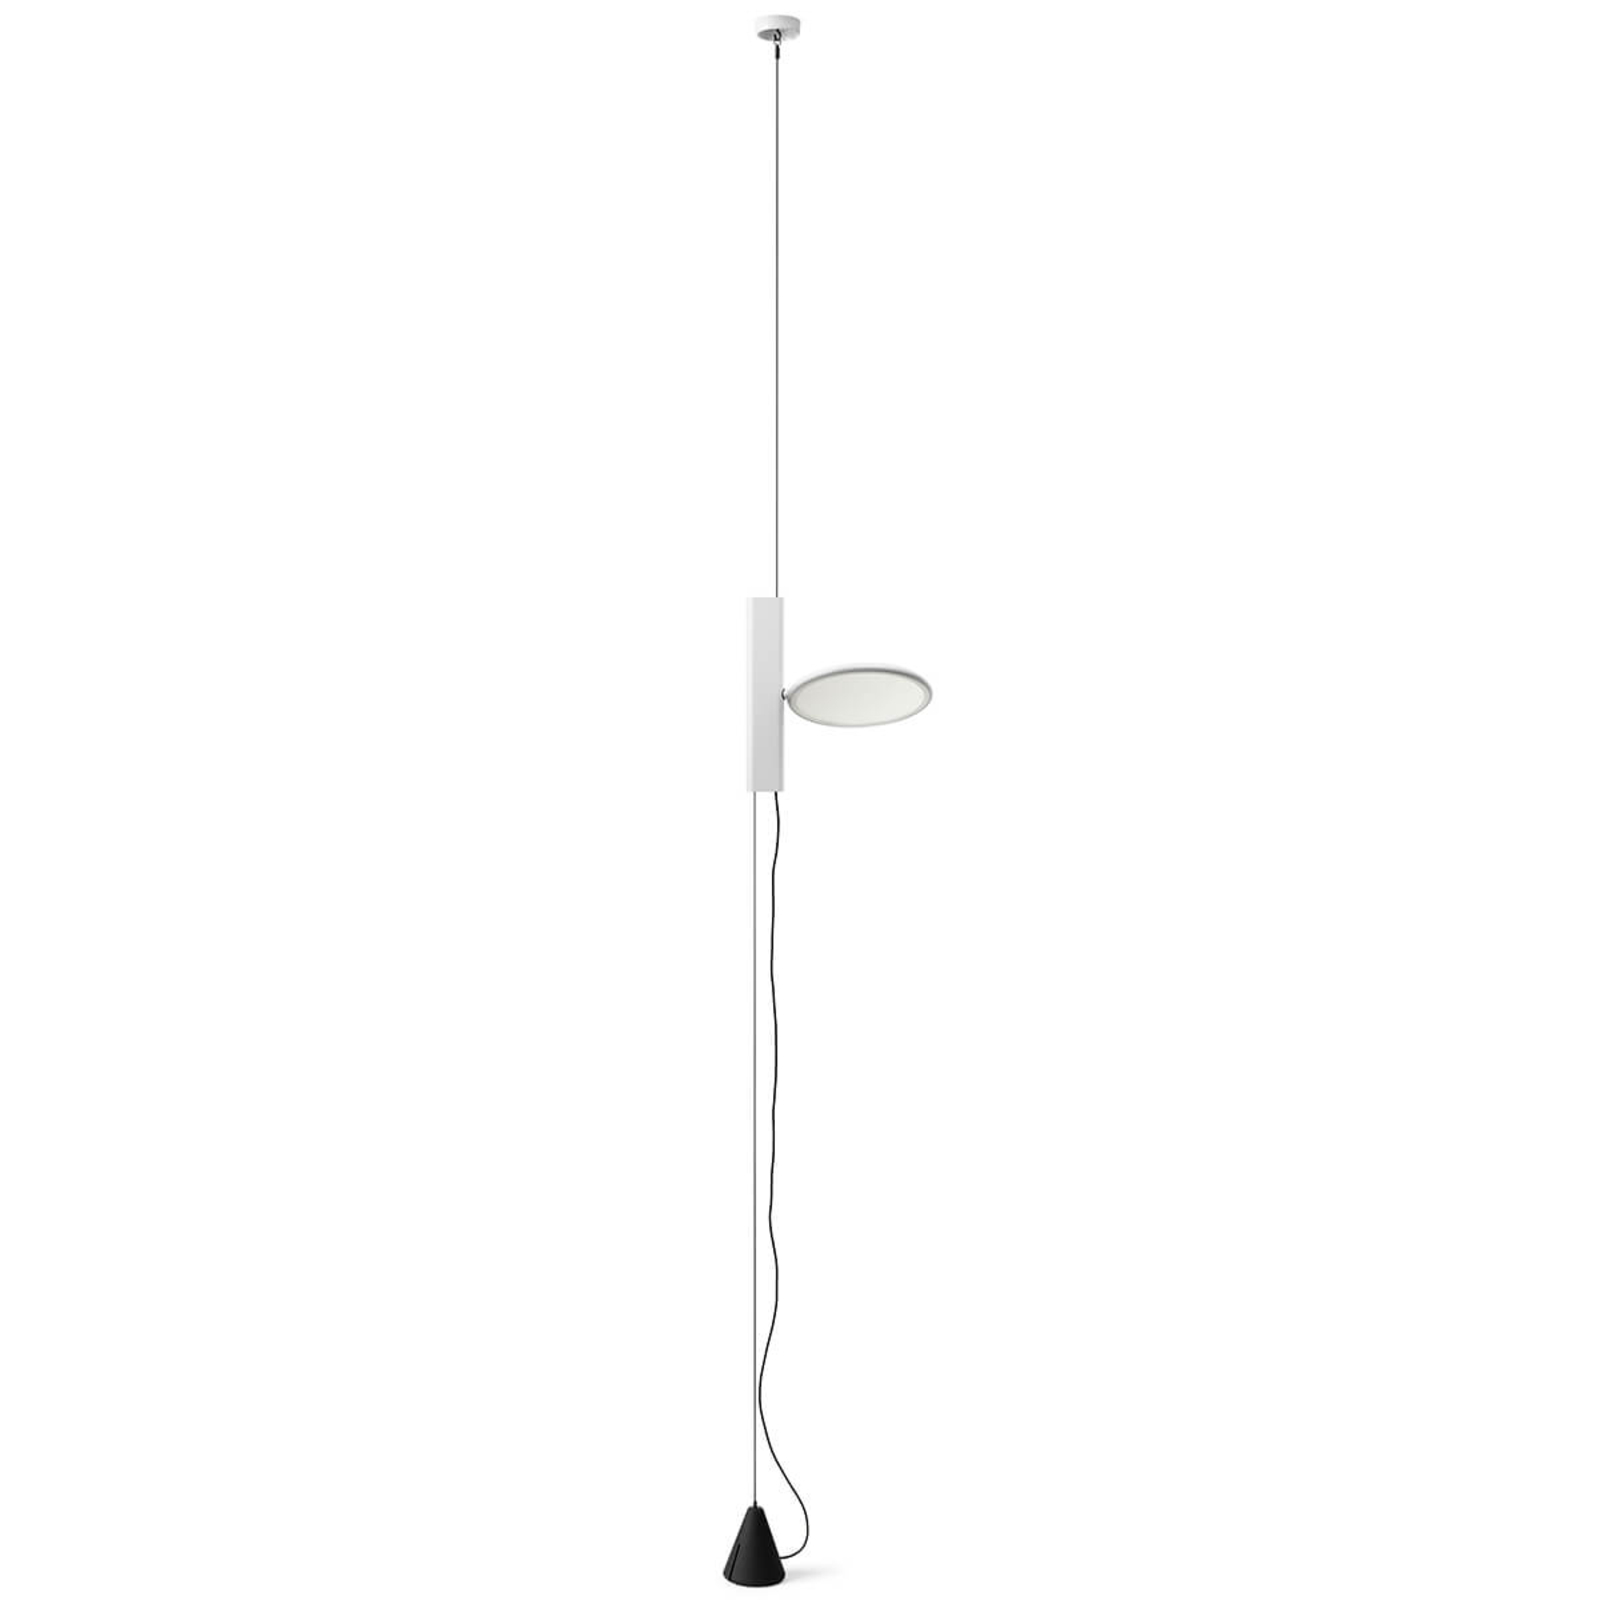 FLOS OK - stående LED-hänglampa i vitt